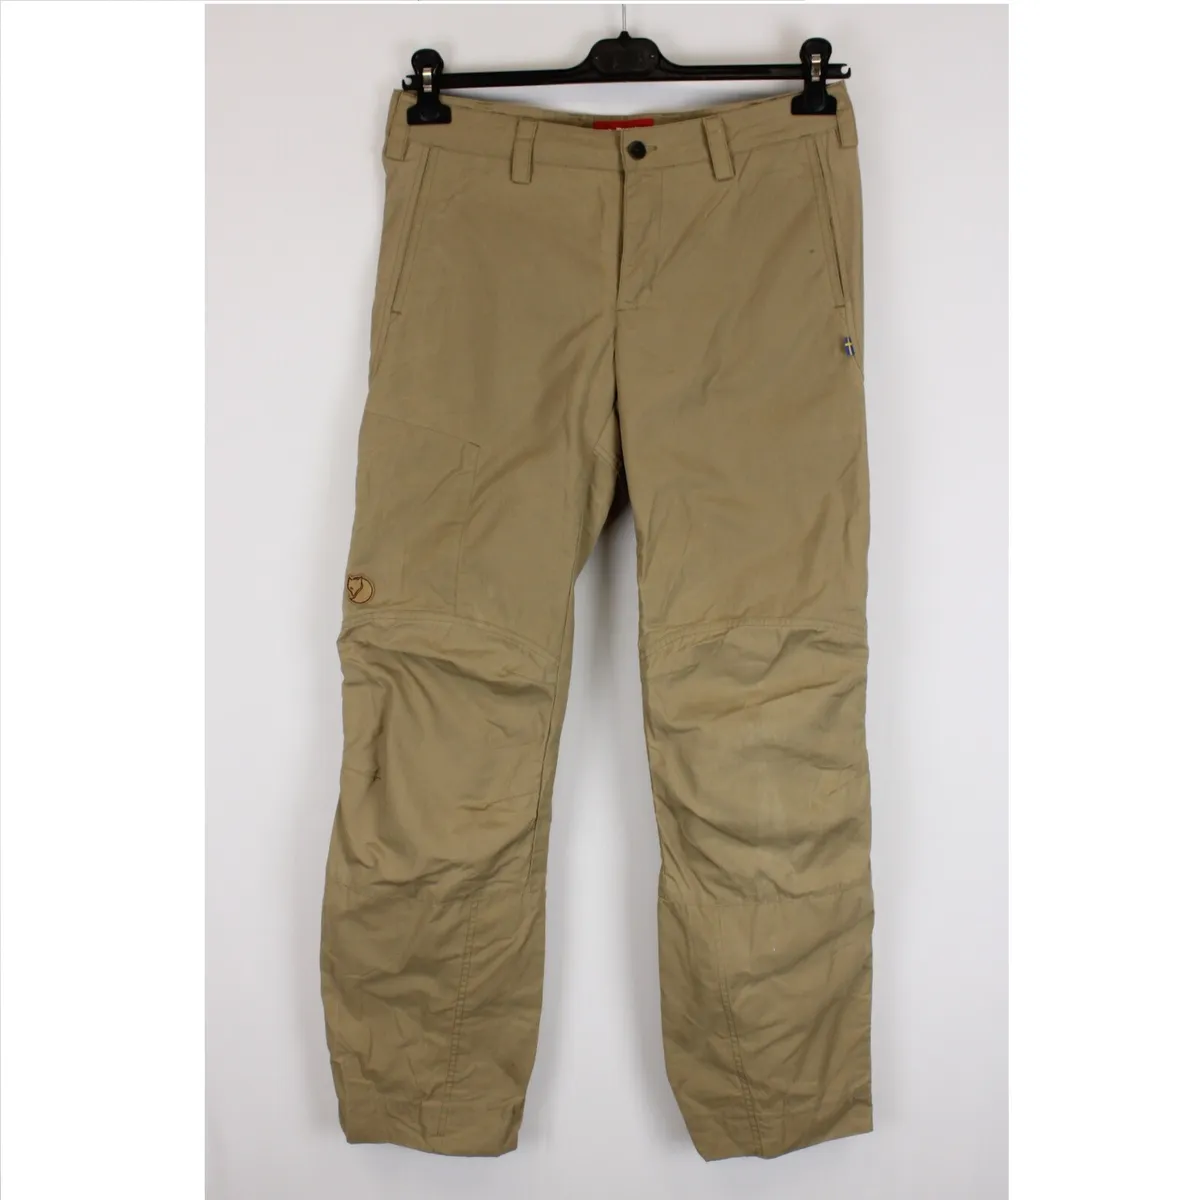 pakket Uitwerpselen Reiziger FJALLRAVEN G-1000 NILLA Women Trousers Size 40 (W32 L32) Brown Waterproof  k4224 | eBay